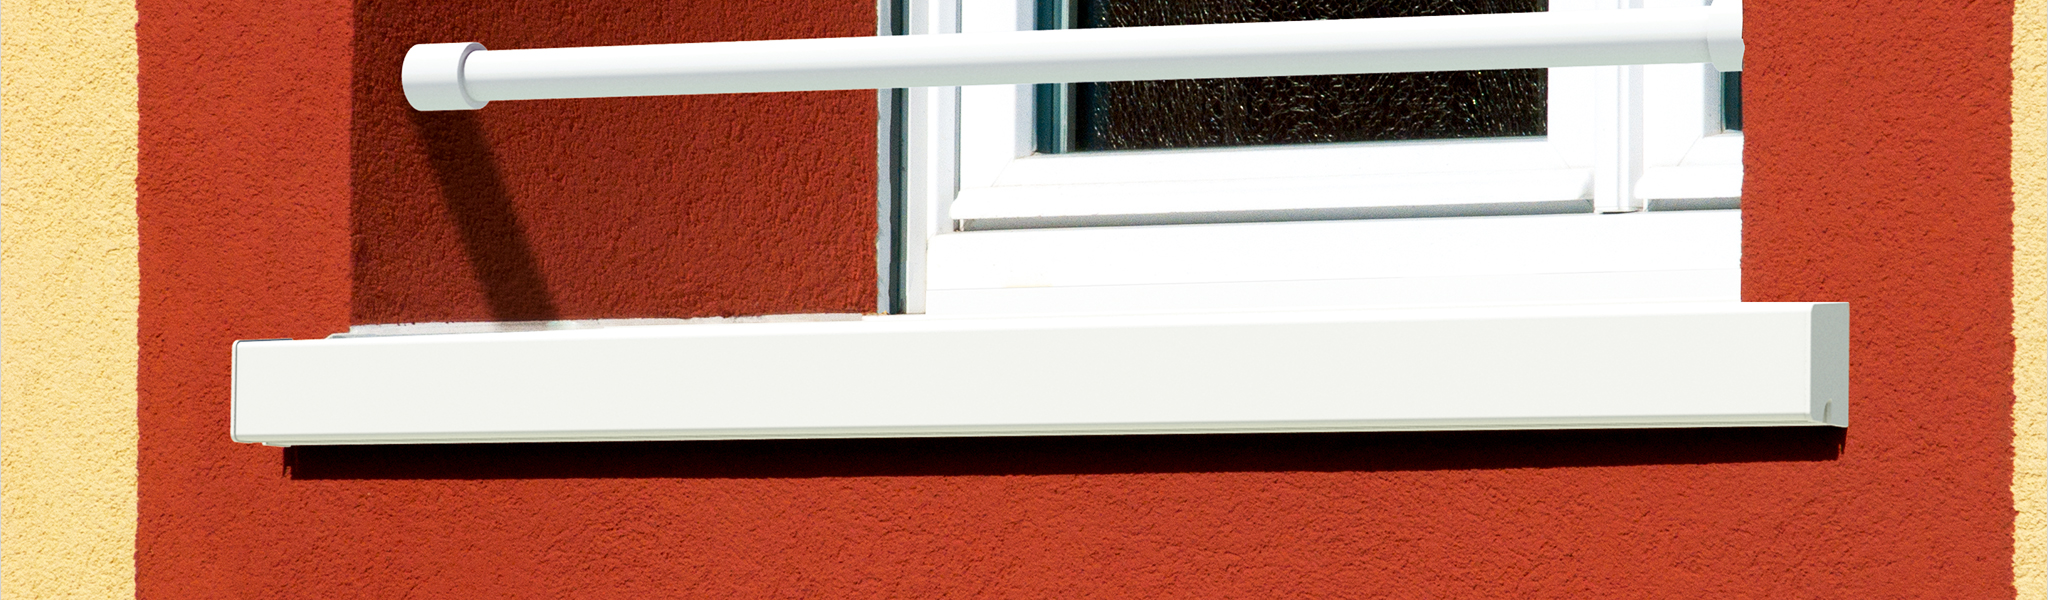 dani alu - Protègenet tradition : appui de fenêtre pour façade avec  isolation thermique par l'extérieur, ITE, bavette aluminium, sur mesure,  laqué